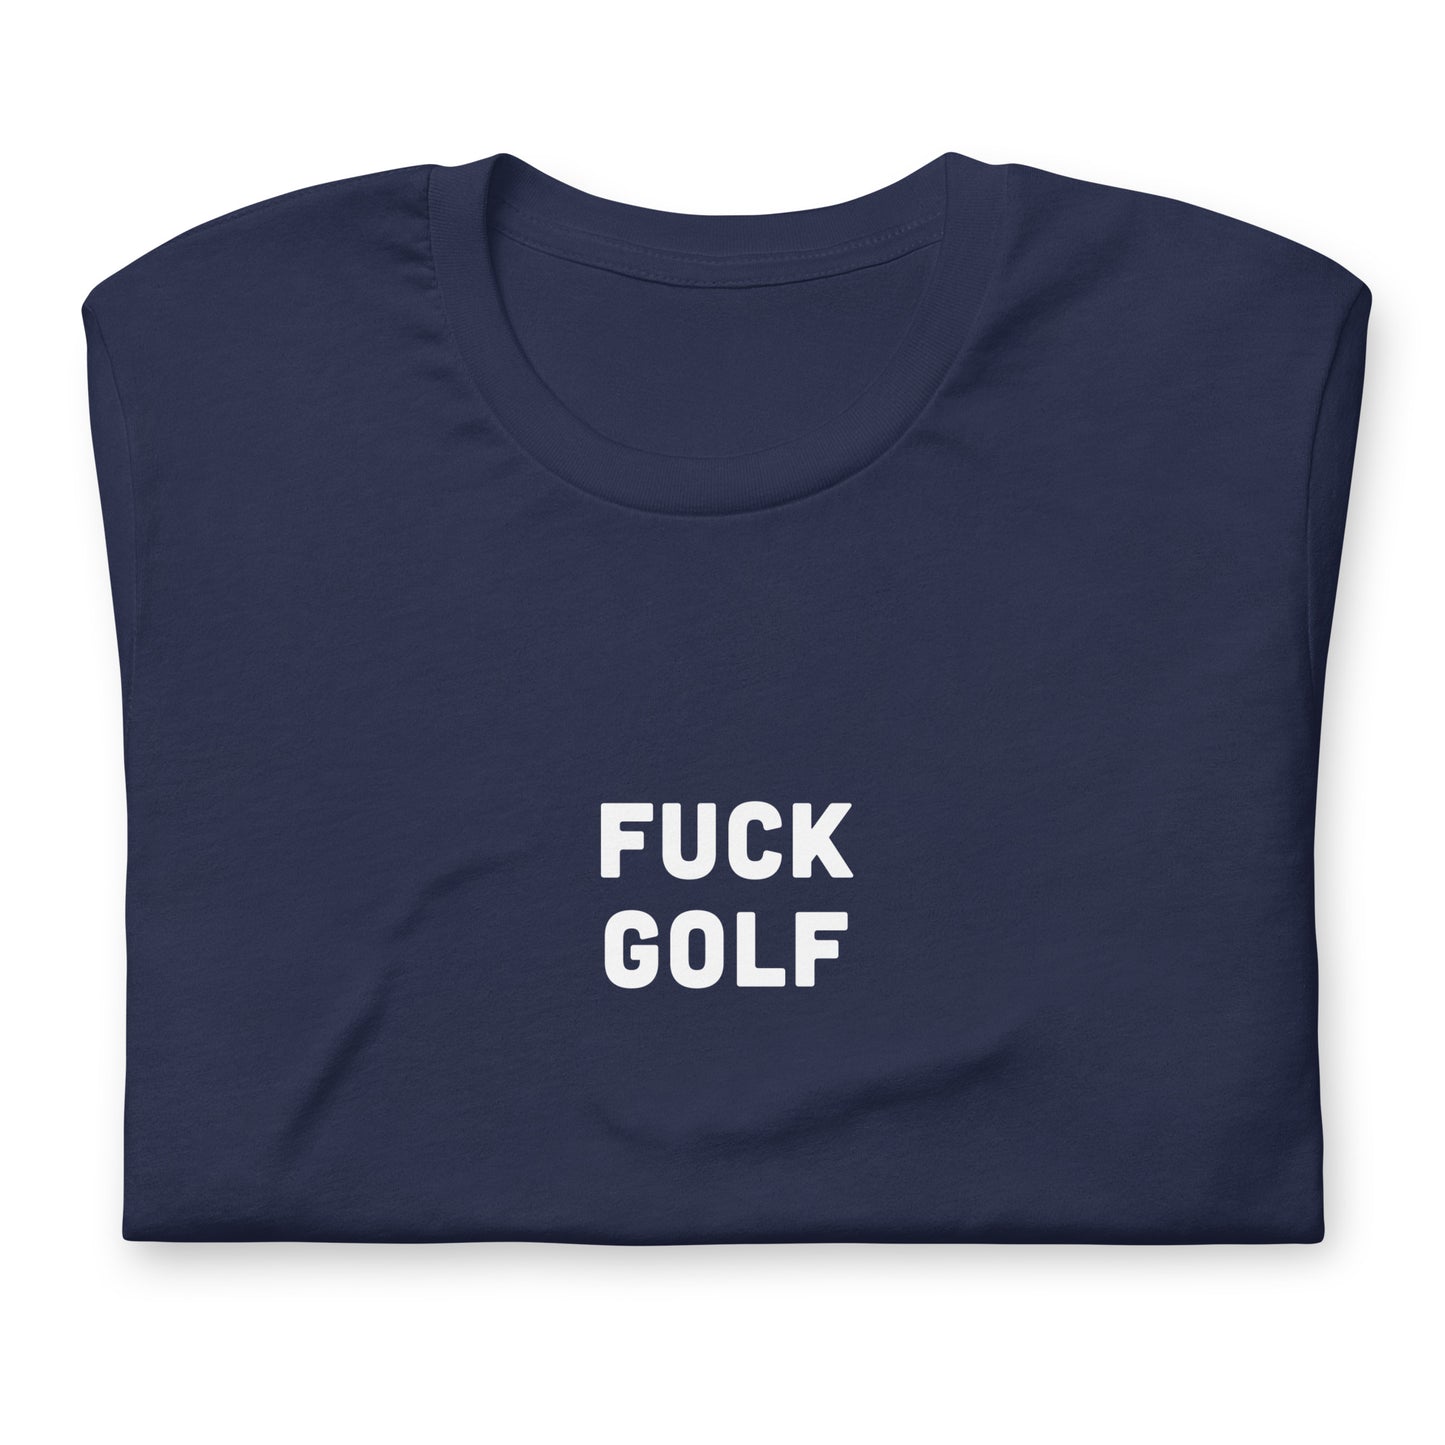 Fuck Golf T-Shirt Size L Color Black